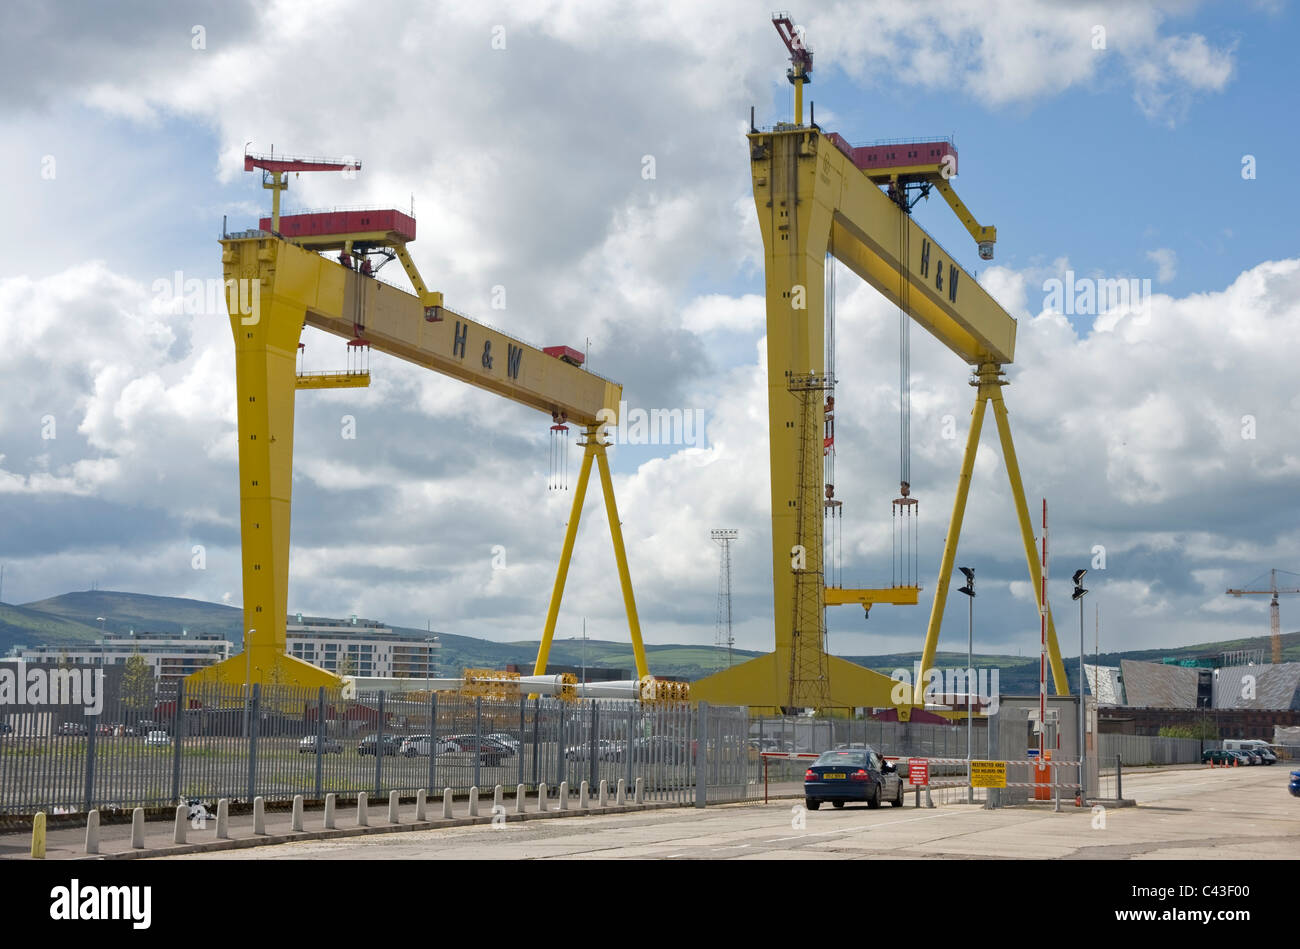 Entrée de chantiers navals Harland & Wolff de Belfast. Banque D'Images